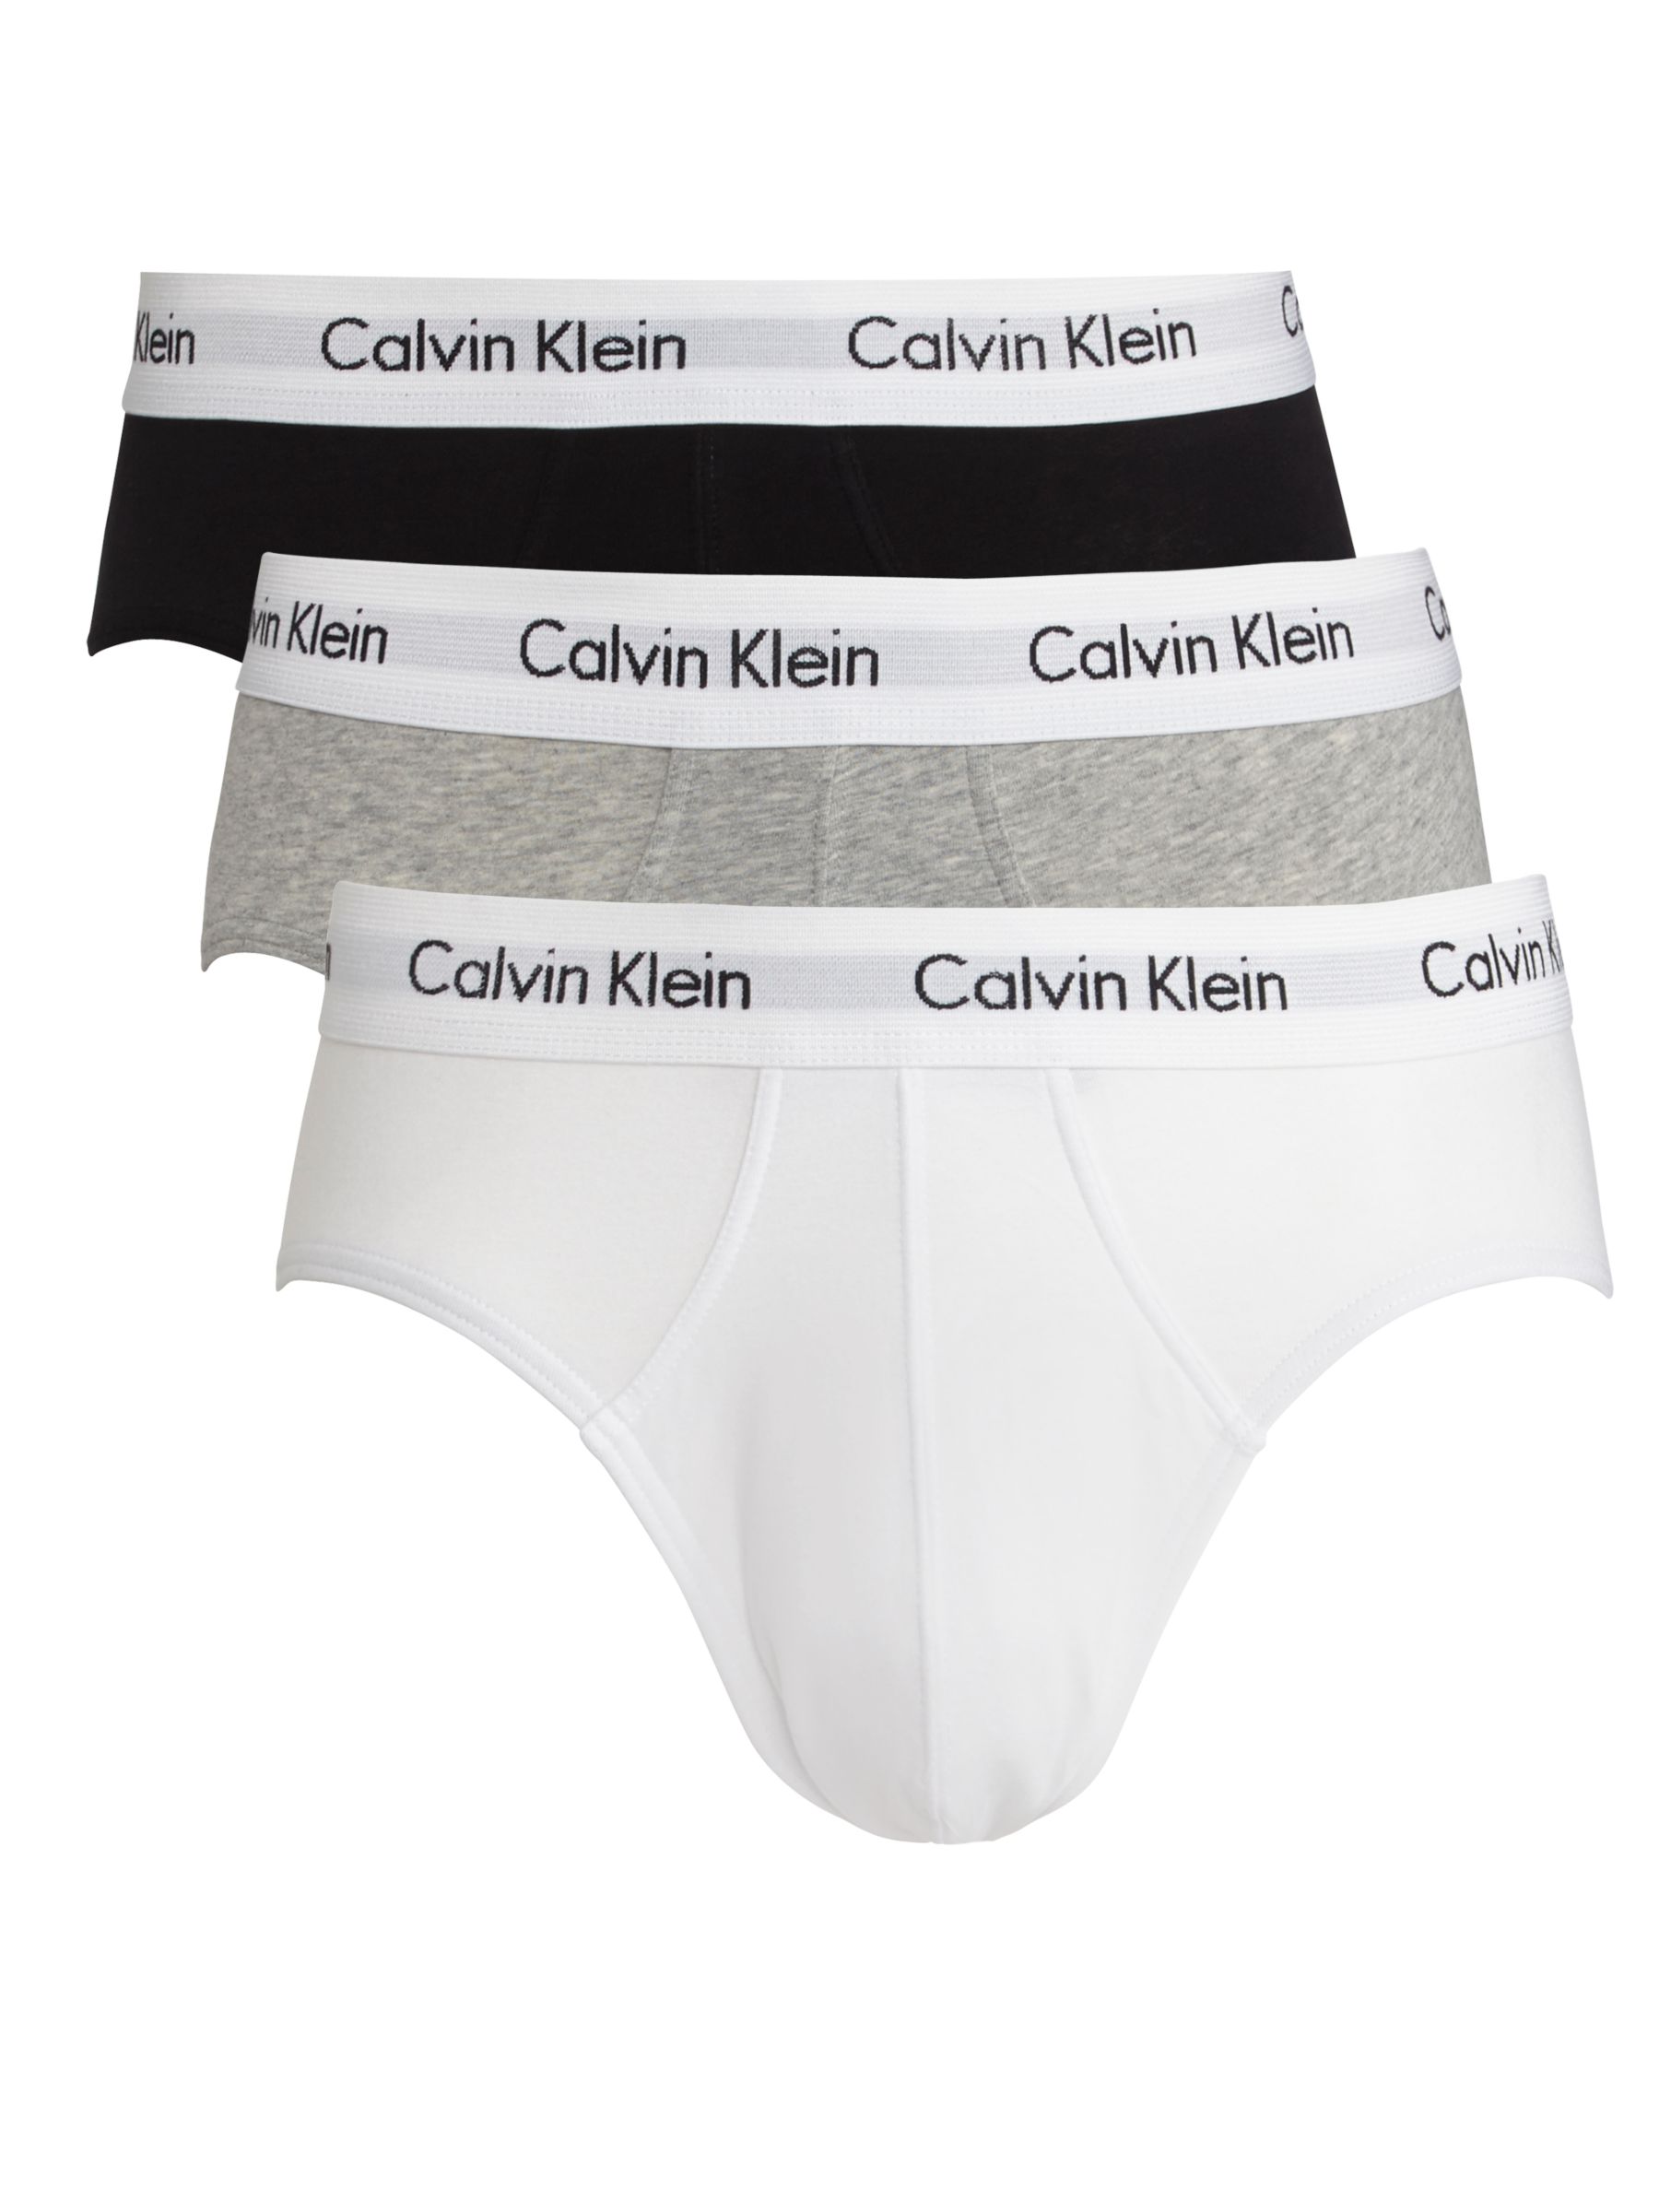 Calvin Klein Calvin Klein Underwear Cotton Briefs, Pack of 3, Black/Grey/White